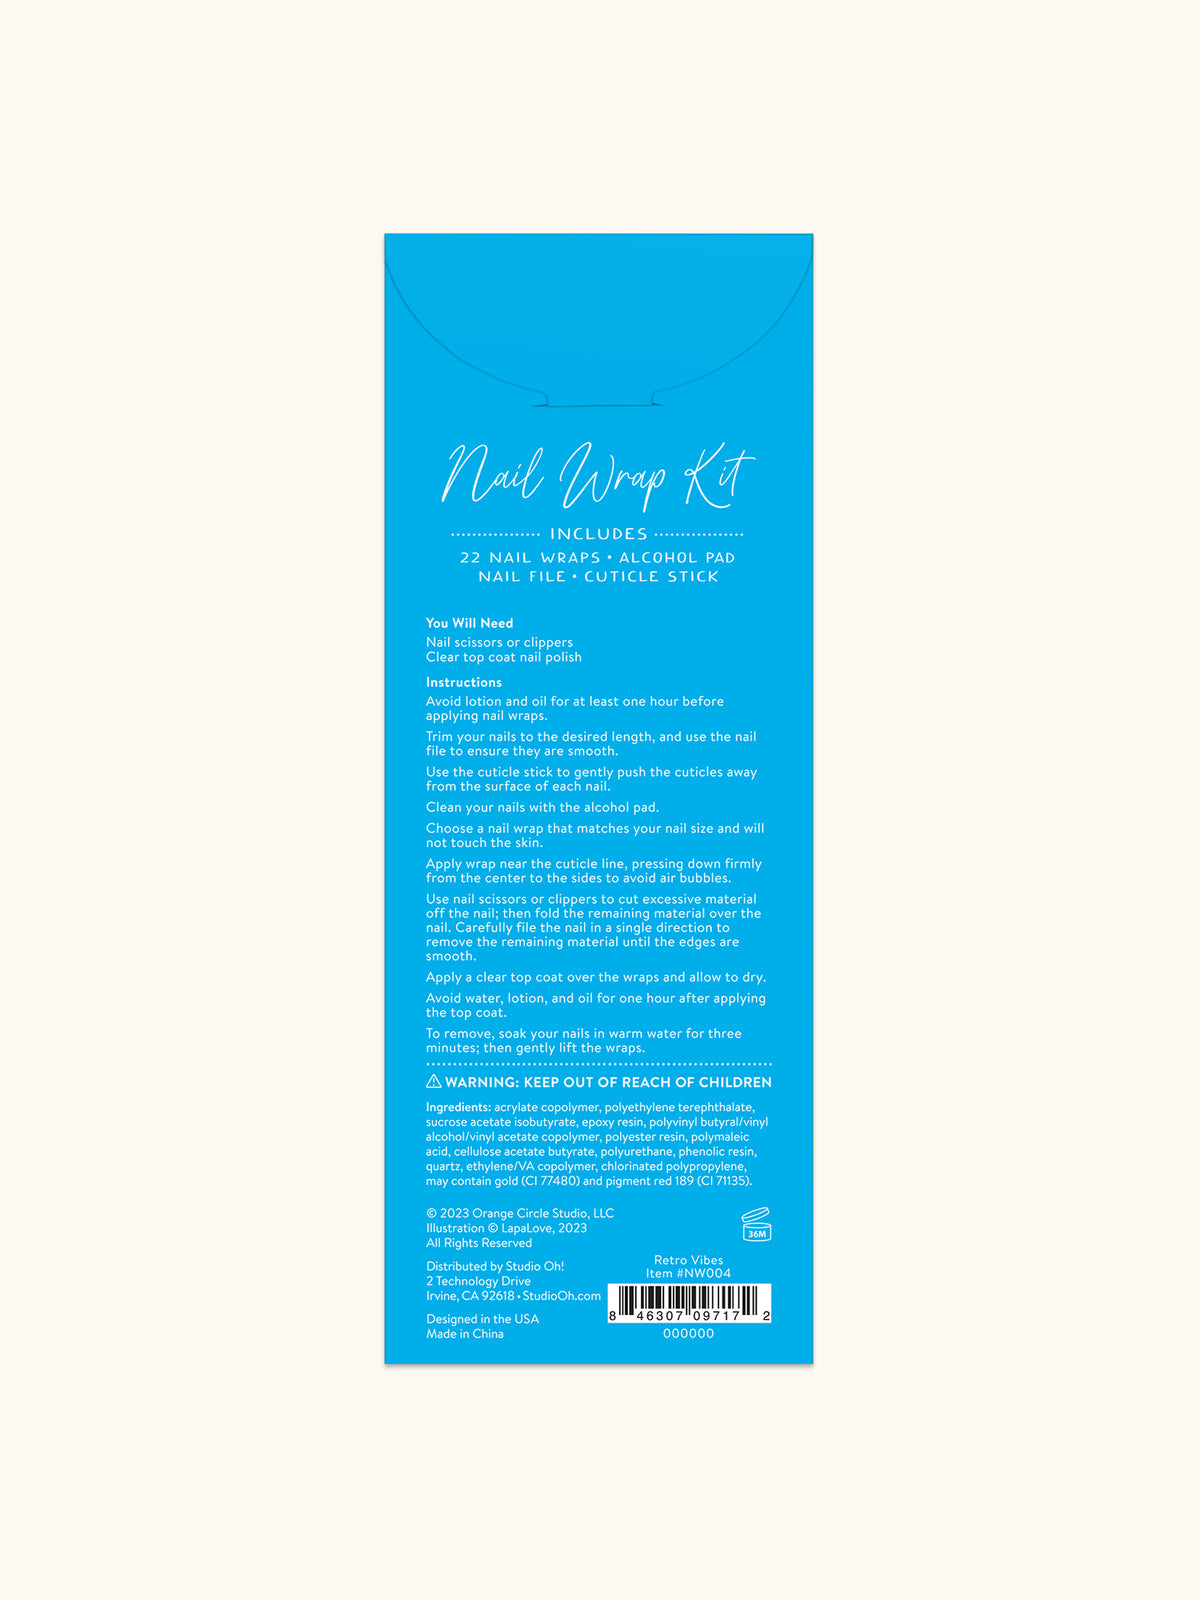 Retro Vibes Mani Nail Wrap Kit